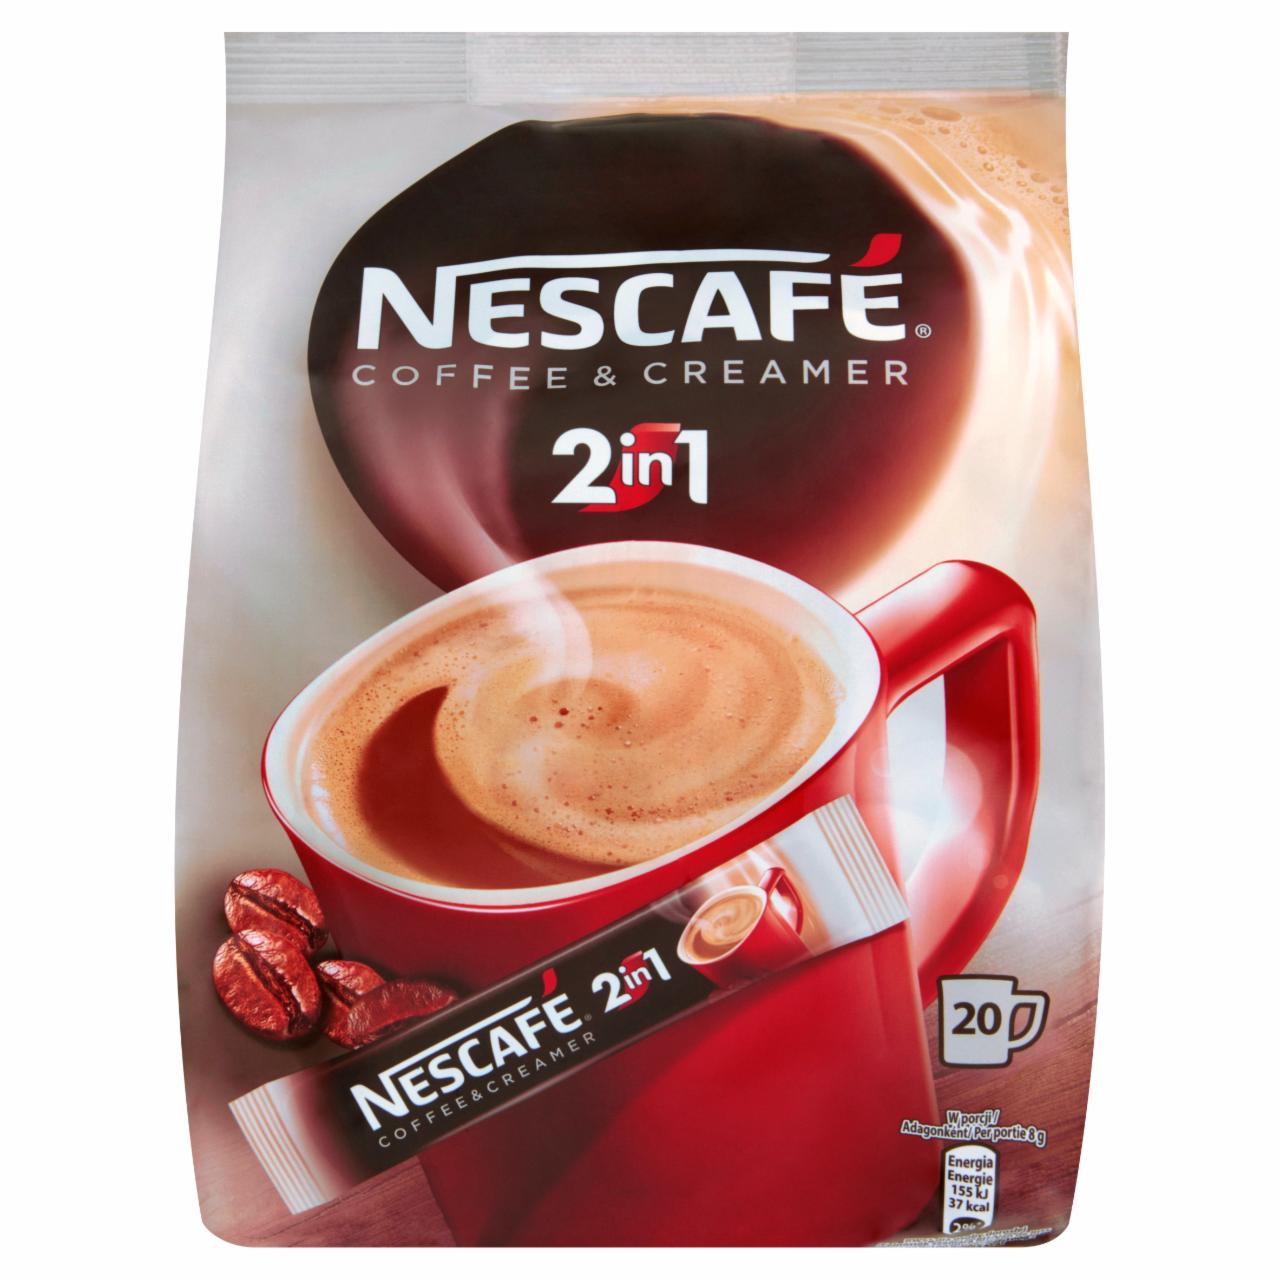 Képek - Nescafé 2in1 azonnal oldódó kávéspecialitás 20 db 160 g